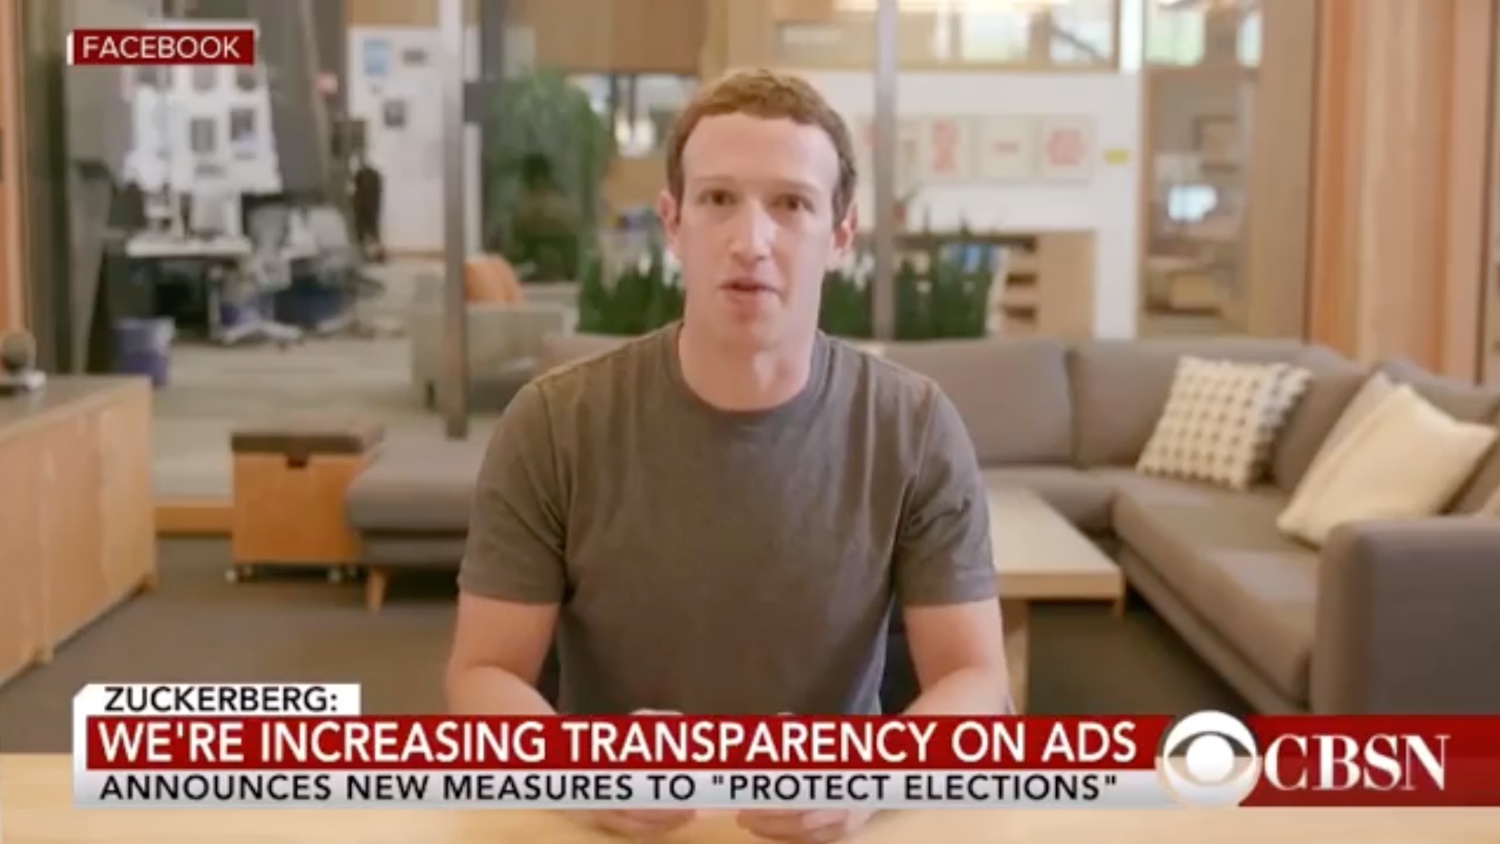 Akaun Instagram Yang Melakukan “Deepfake” Wajah Mark Zuckerberg Masih Tidak Dipadam Oleh Pihak Facebook